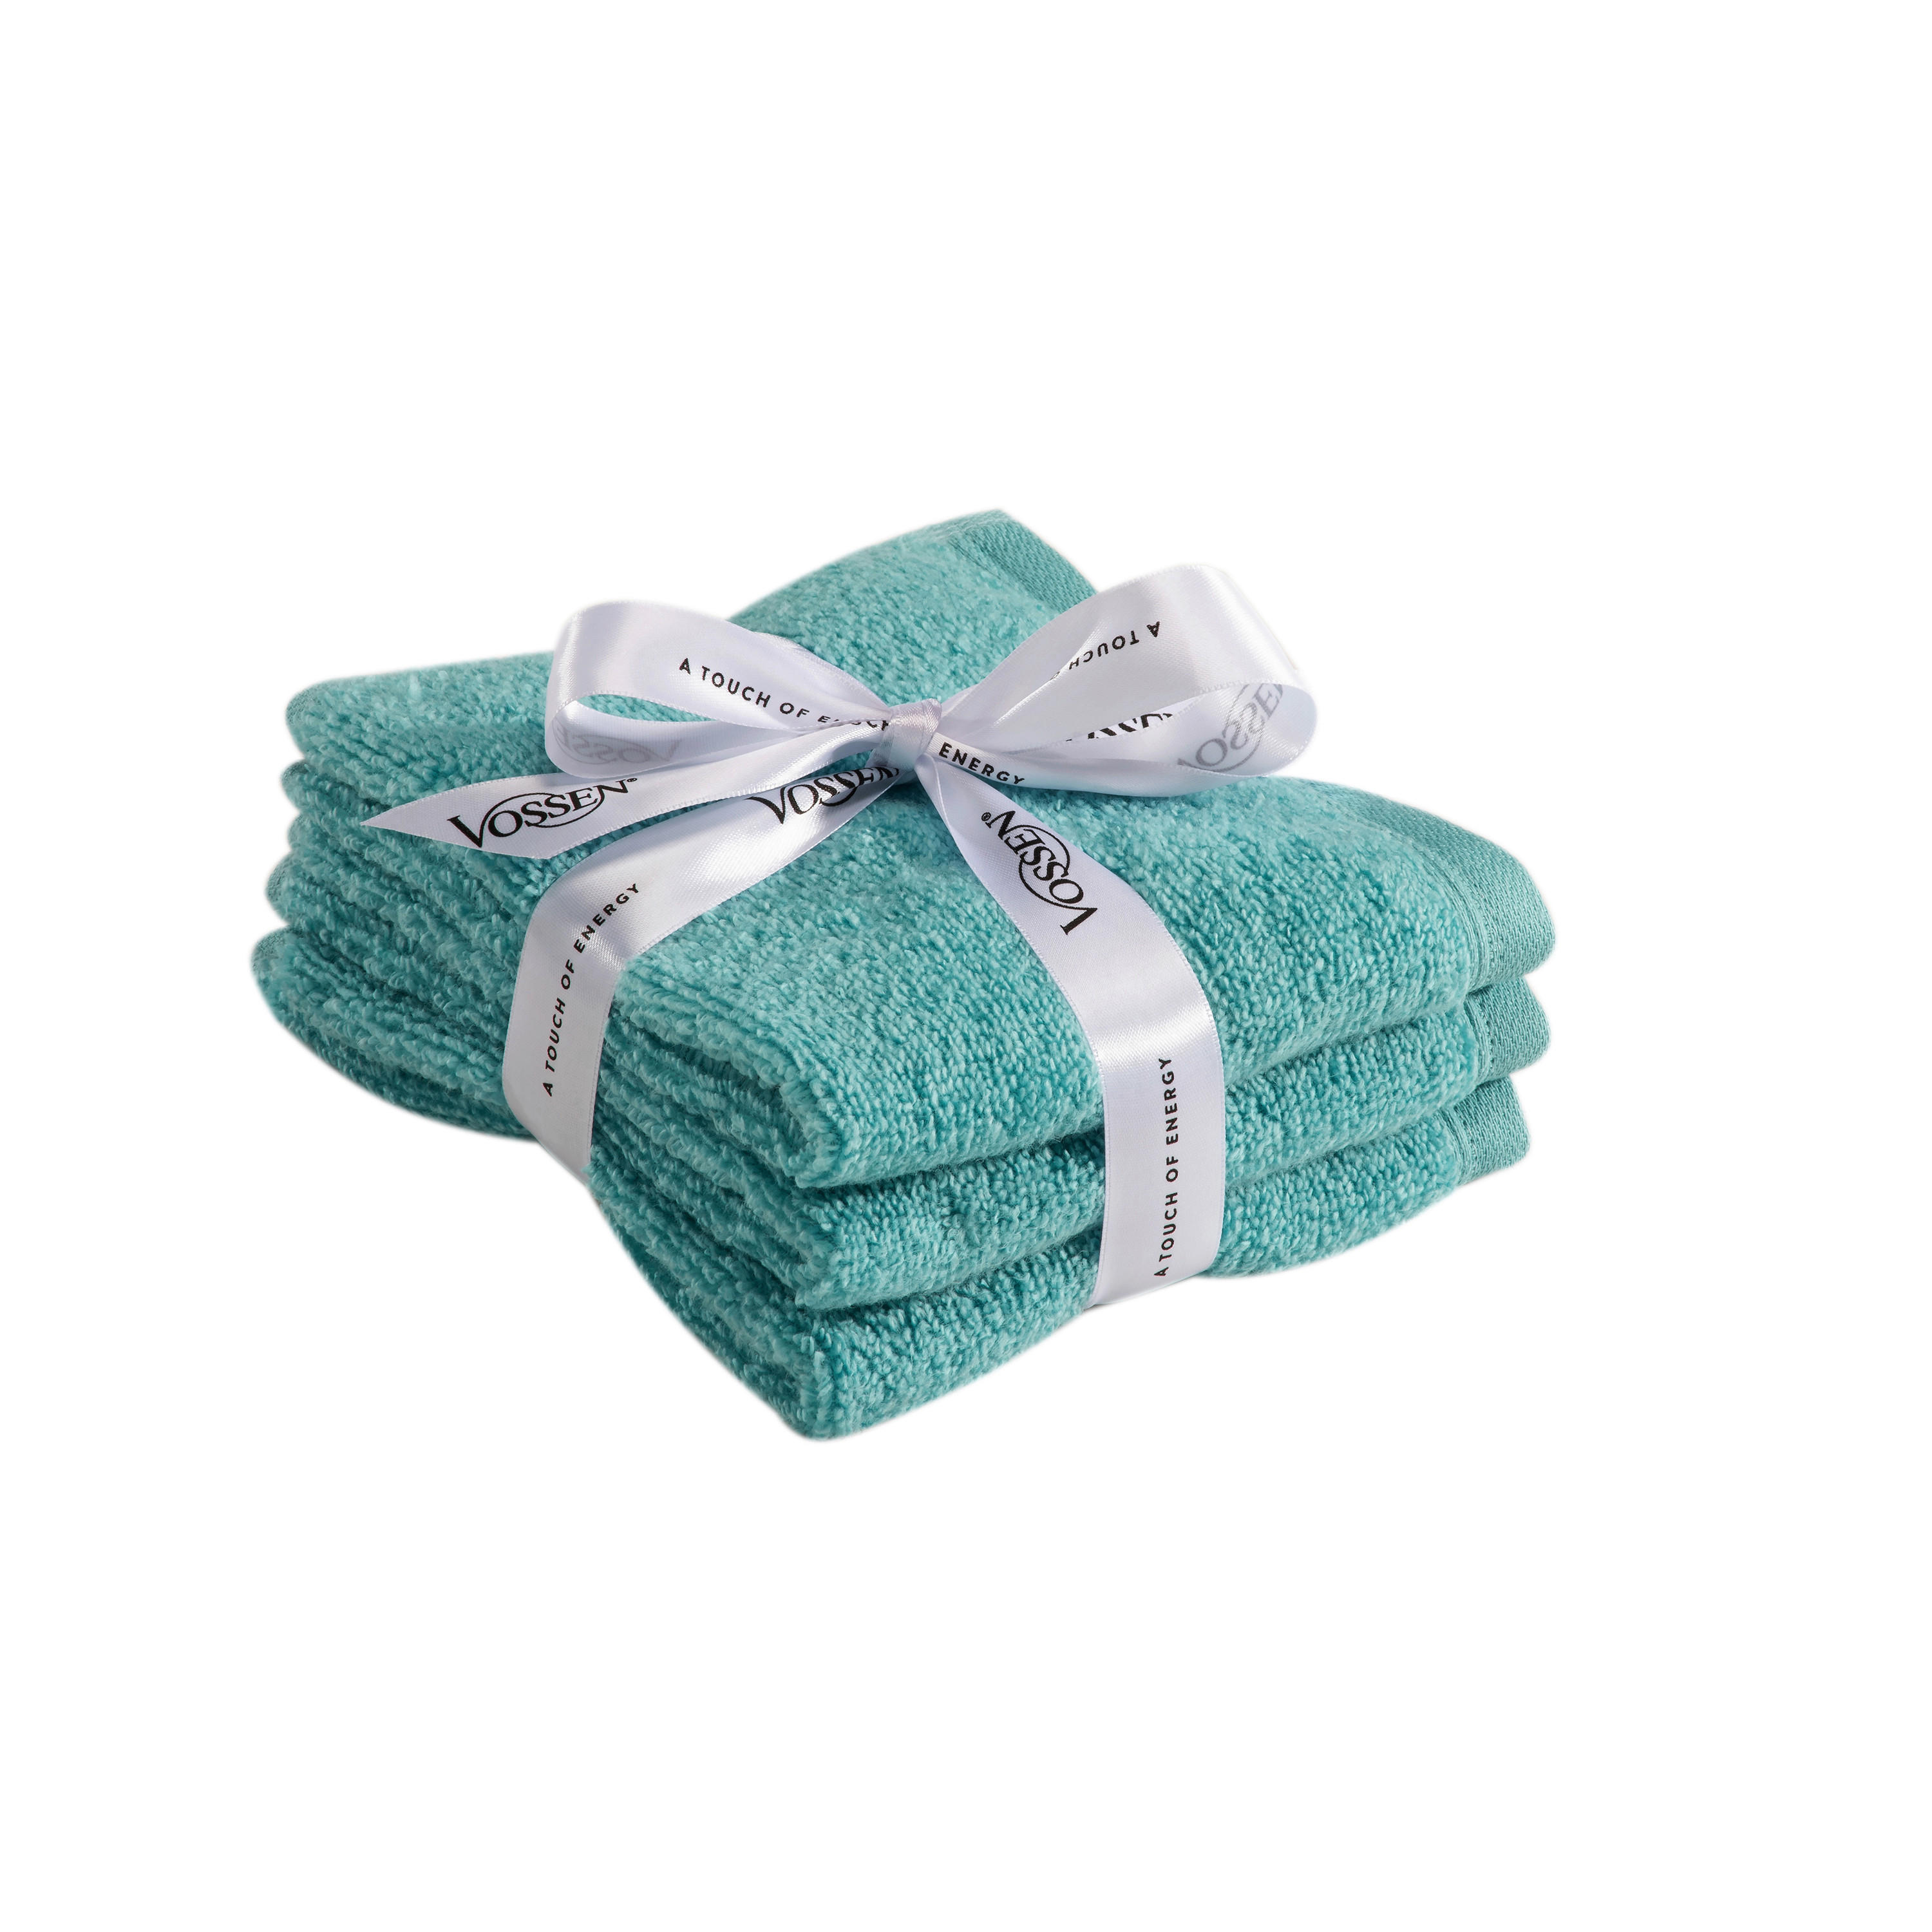 GÄSTETUCH Smart Towel 3-teilig  - Türkis, Basics, Textil (30/50cm) - Vossen